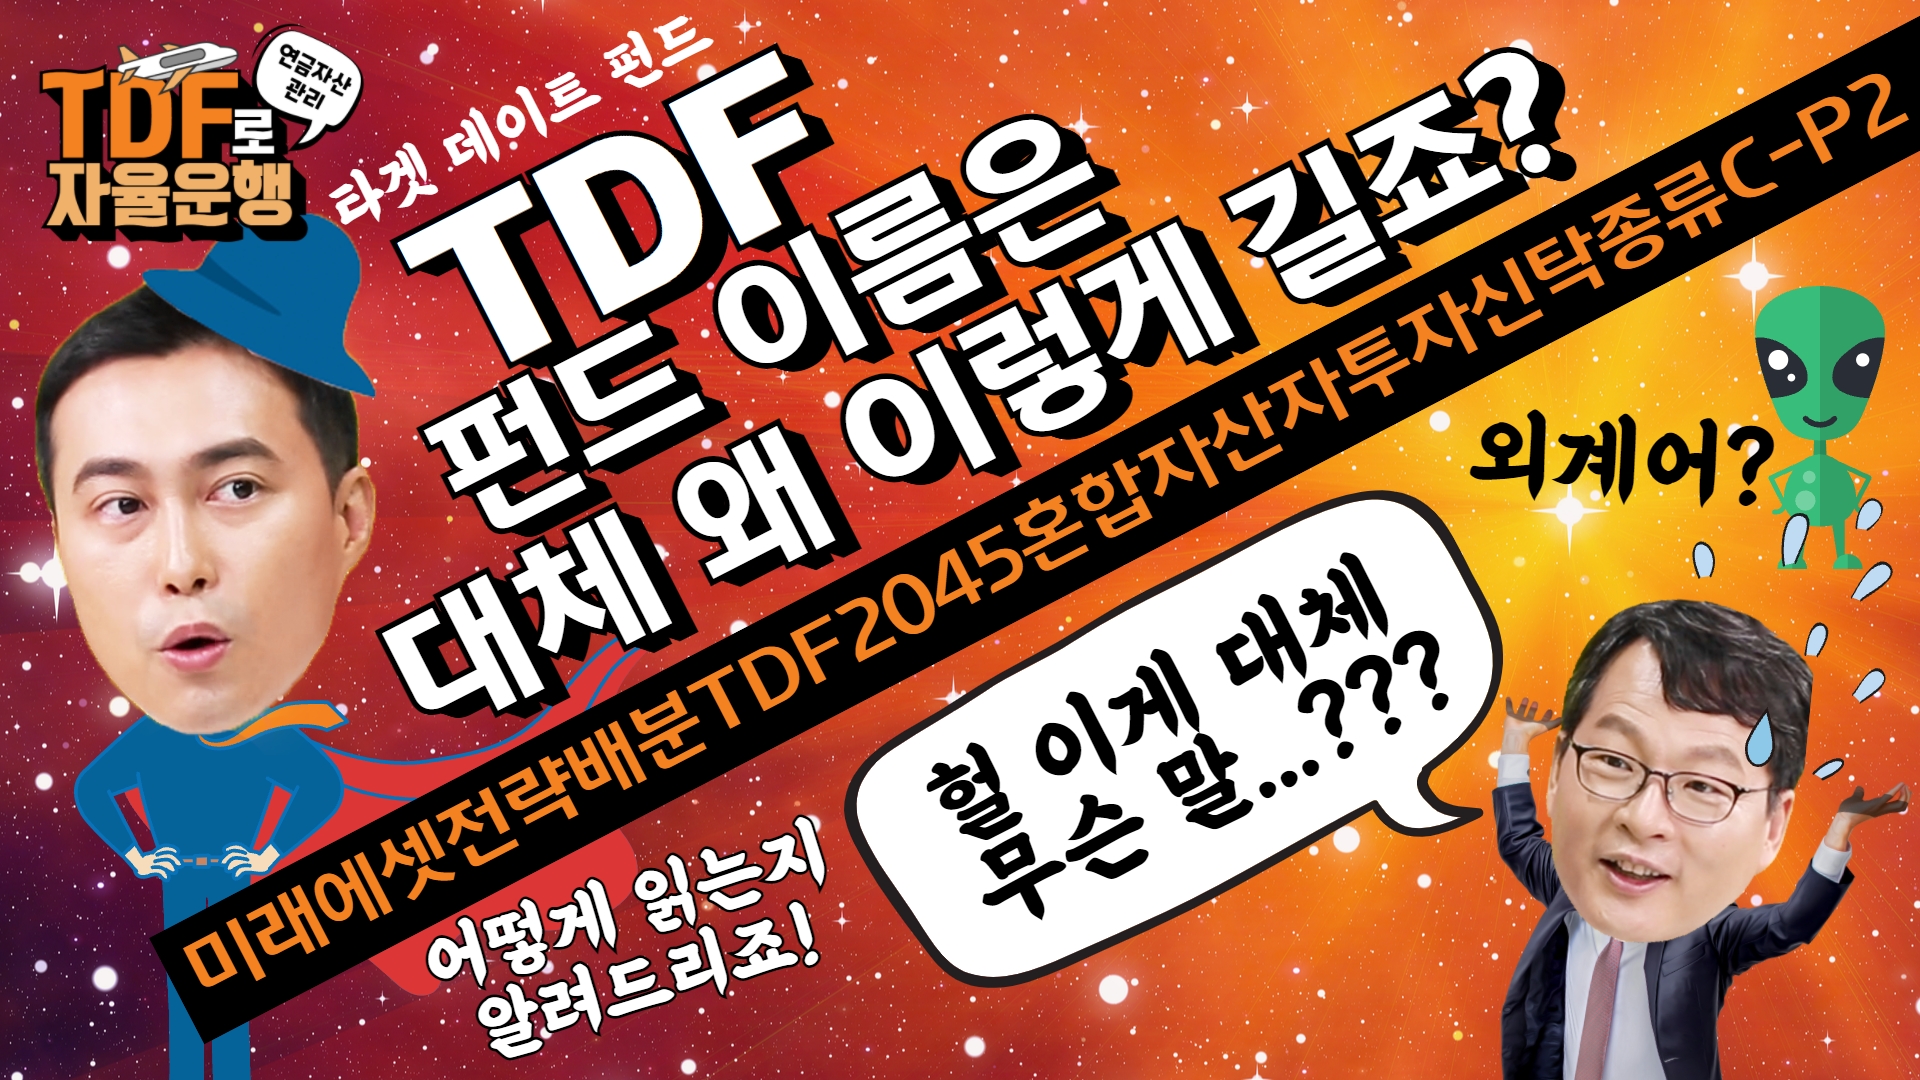 [TDF11부] TDF 펀드 이름은 대체 왜 이렇게 긴가요? 그 이유! 아주 상세하게 알려드리겠습니다